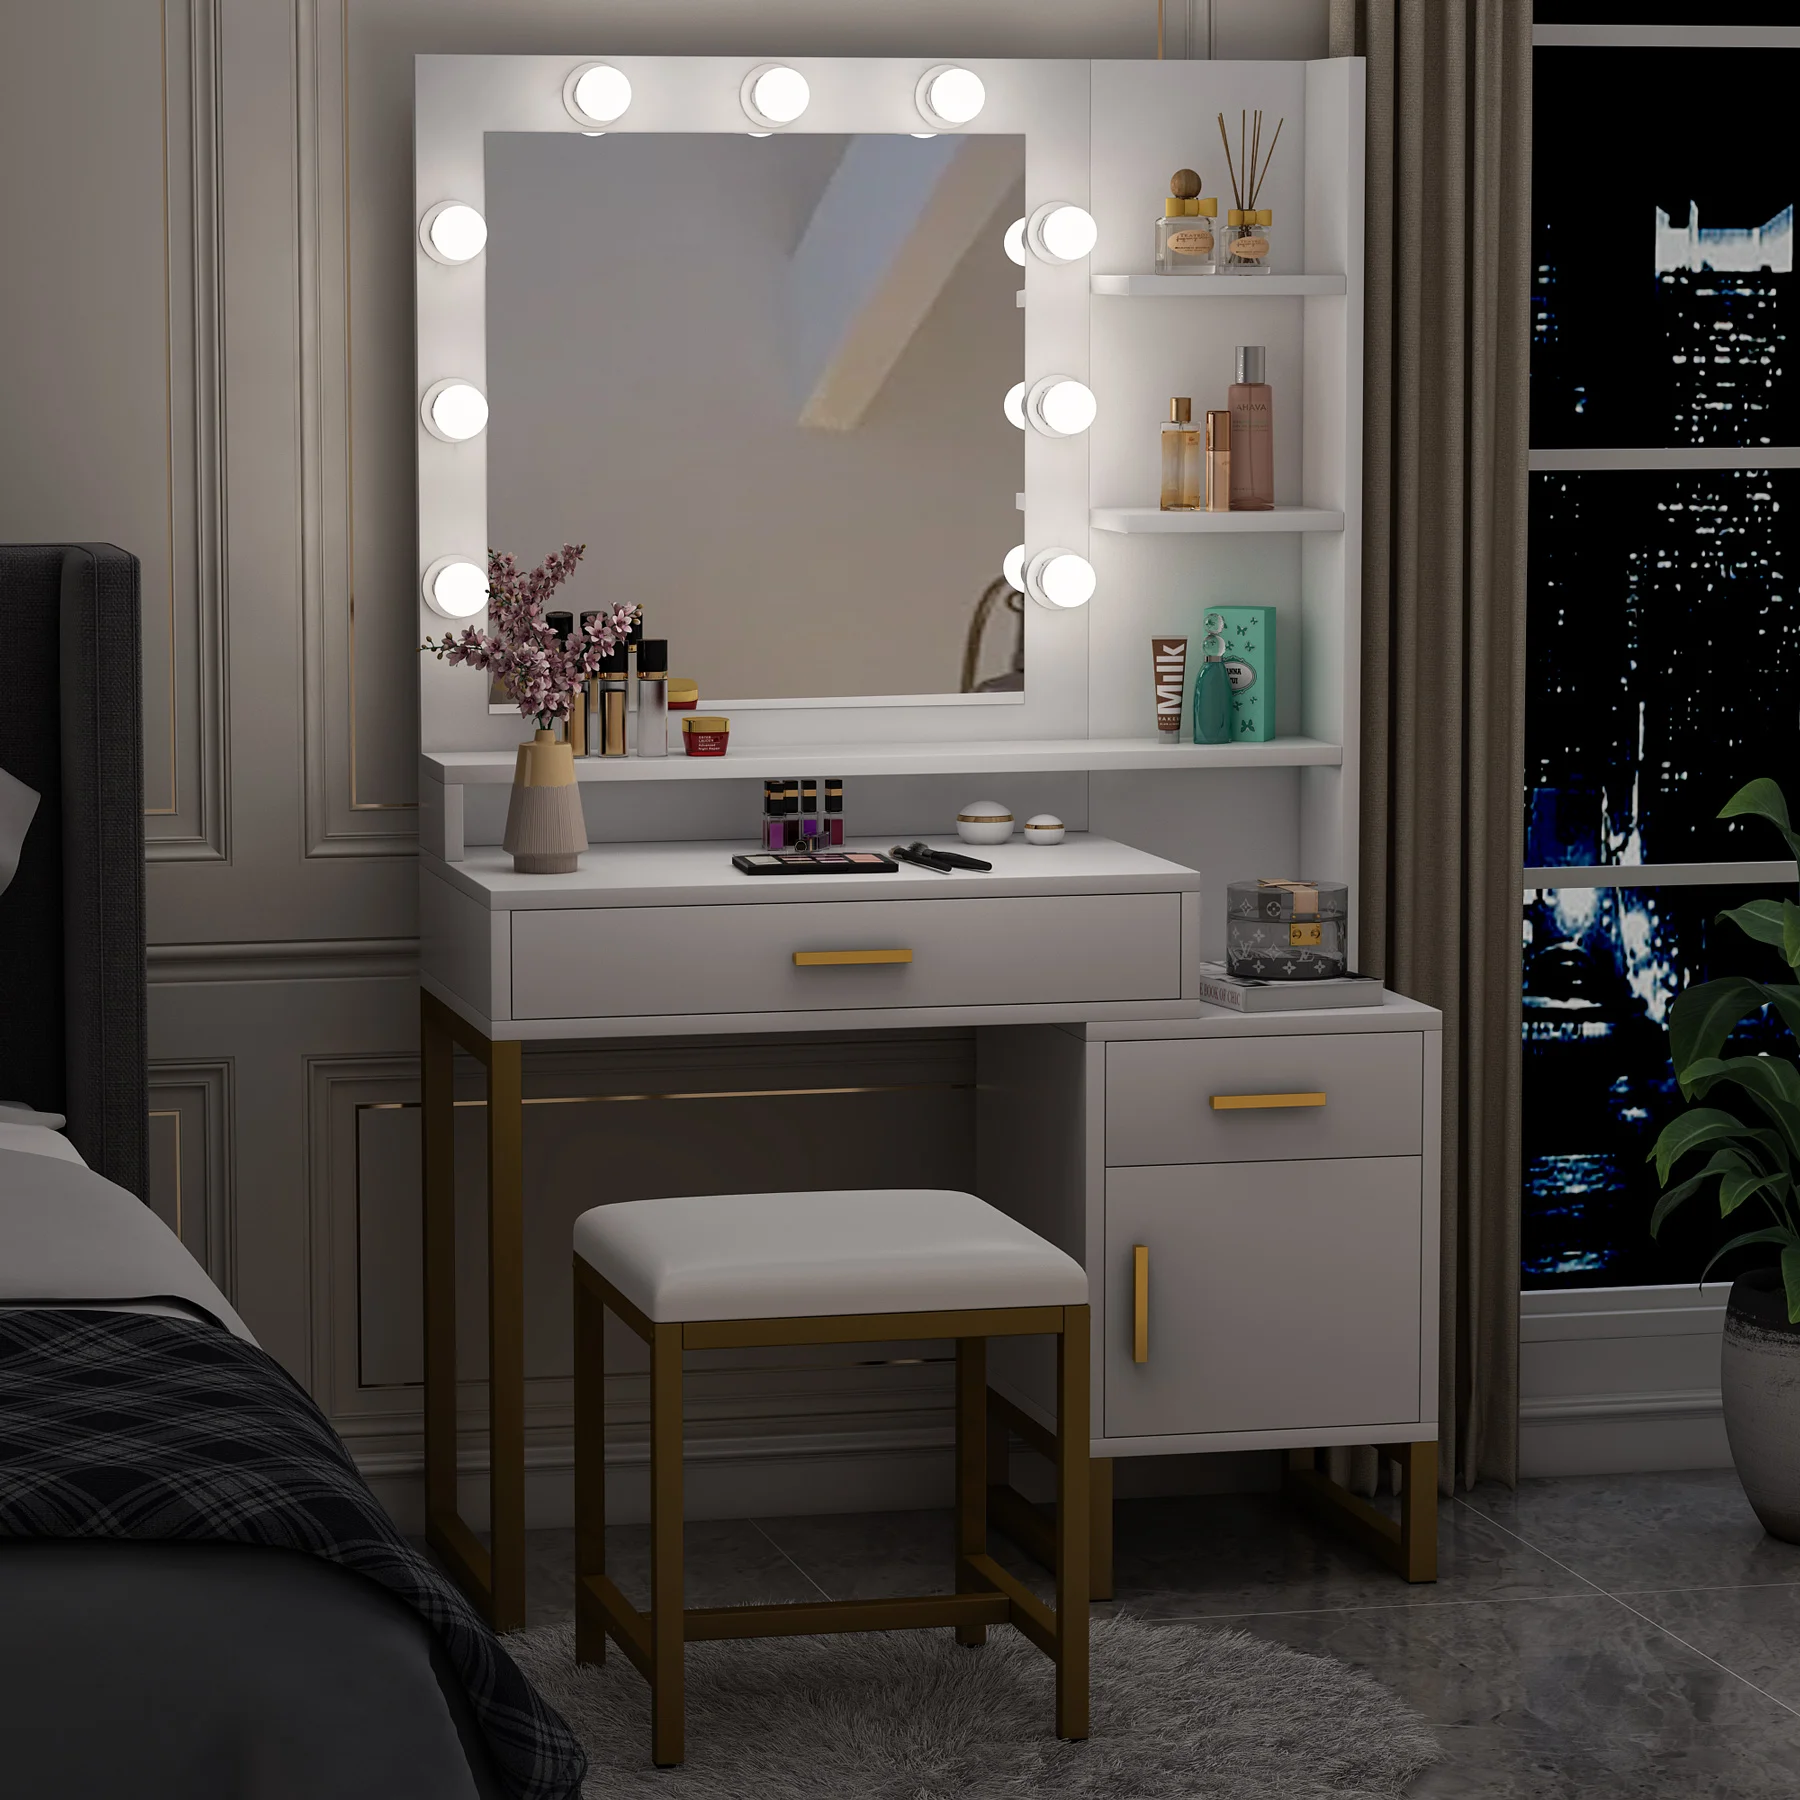 Elegant Makeup Table Vanity Dresser set with 9 LED Lights Mirror Drawer Storage Shelves and Cabinet for Women Girls